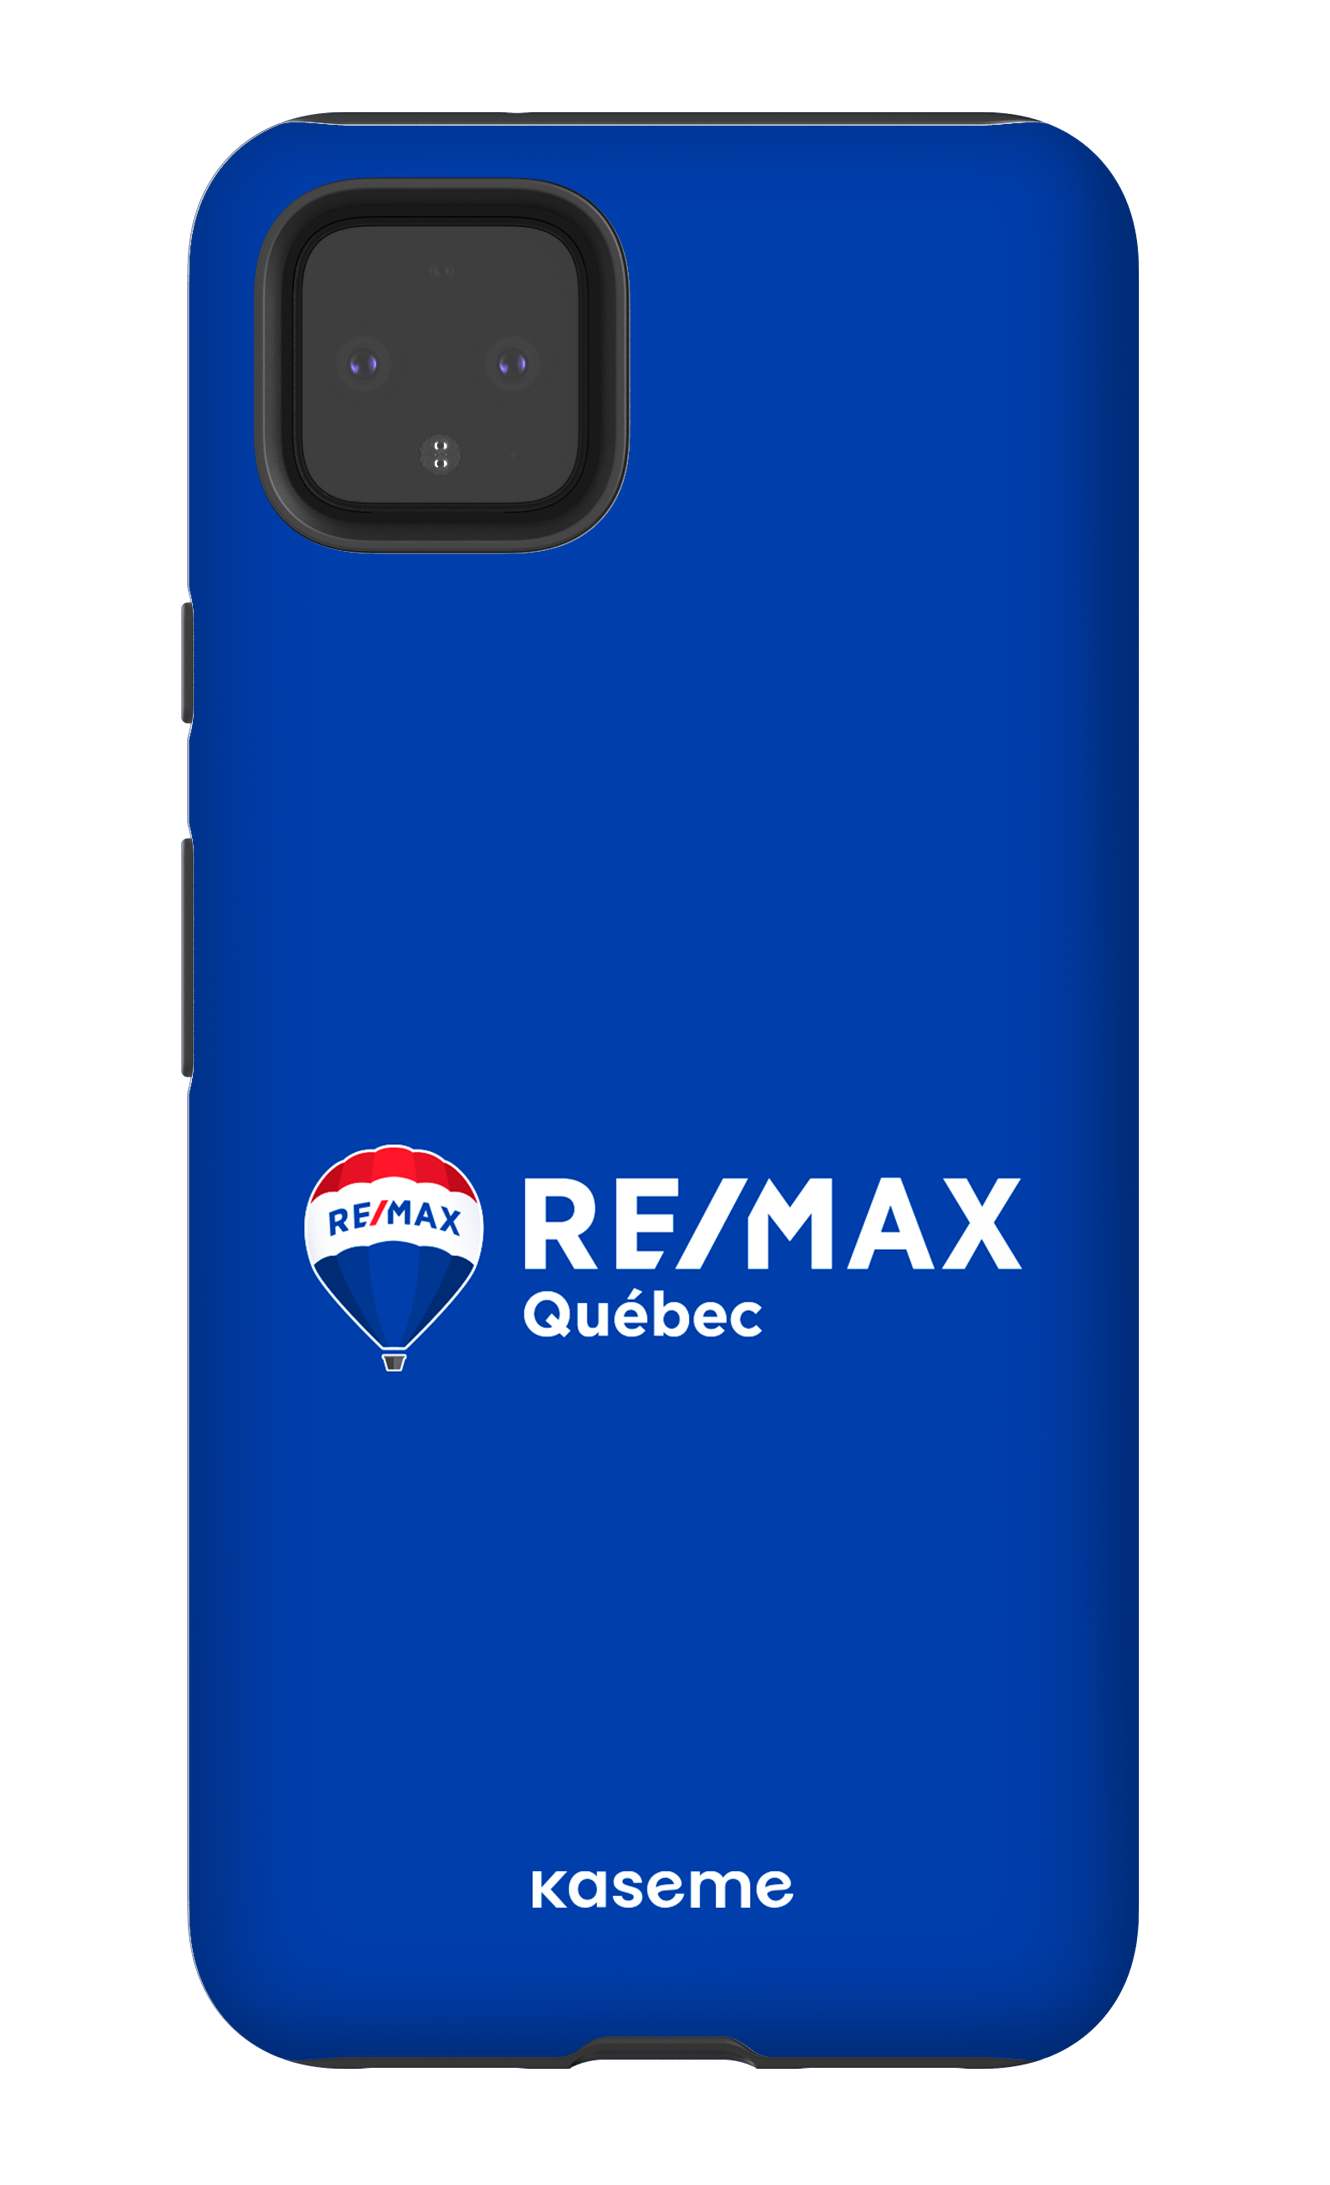 Remax Québec Bleu - Google Pixel 4 XL